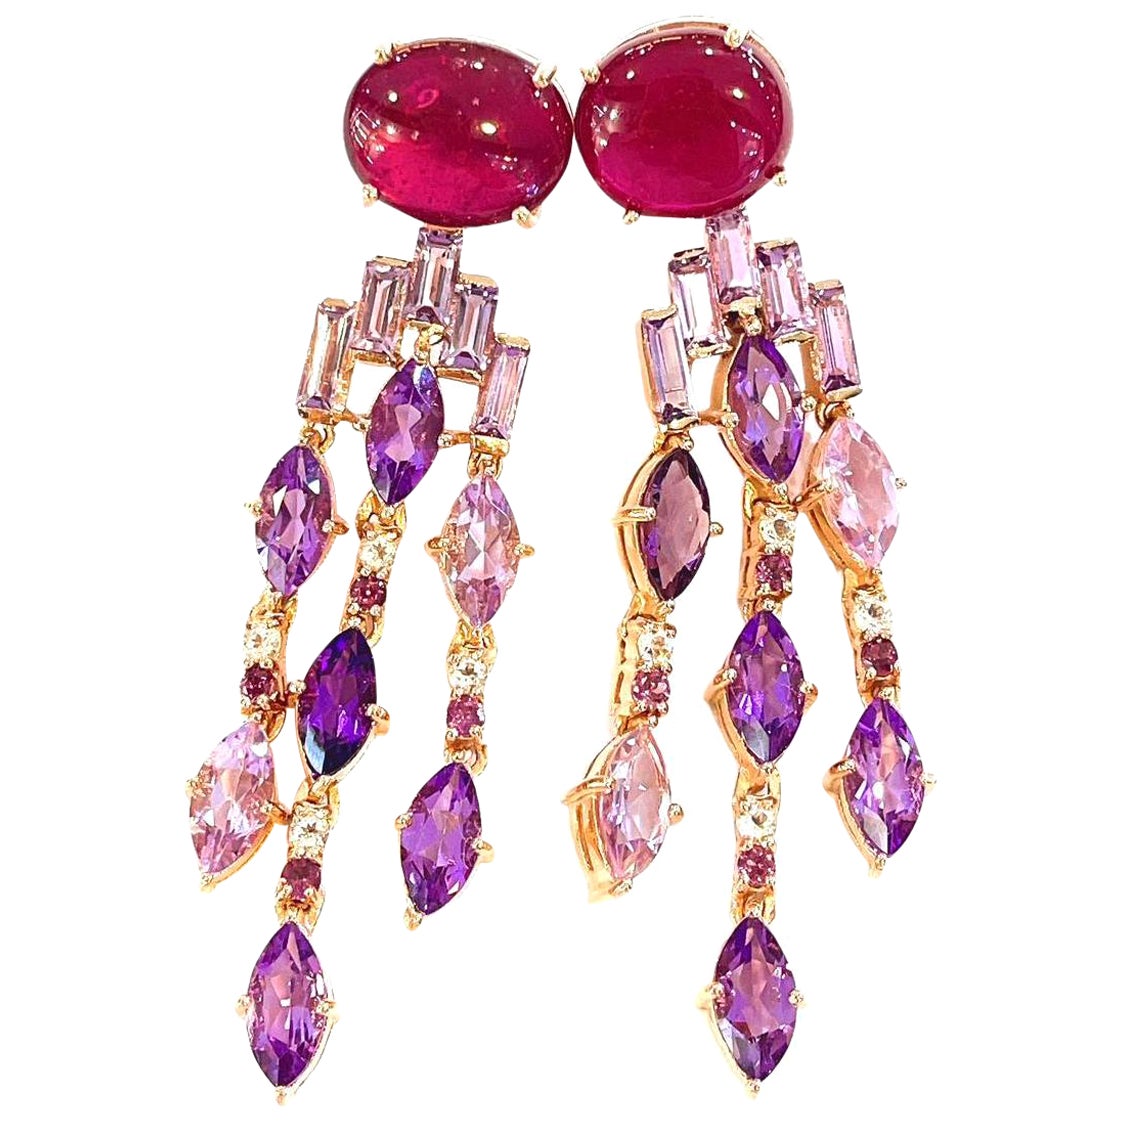 Bochic “Capri” Red Ruby & Purple Amethyst Earrings Set in 22k Gold & Silver  For Sale